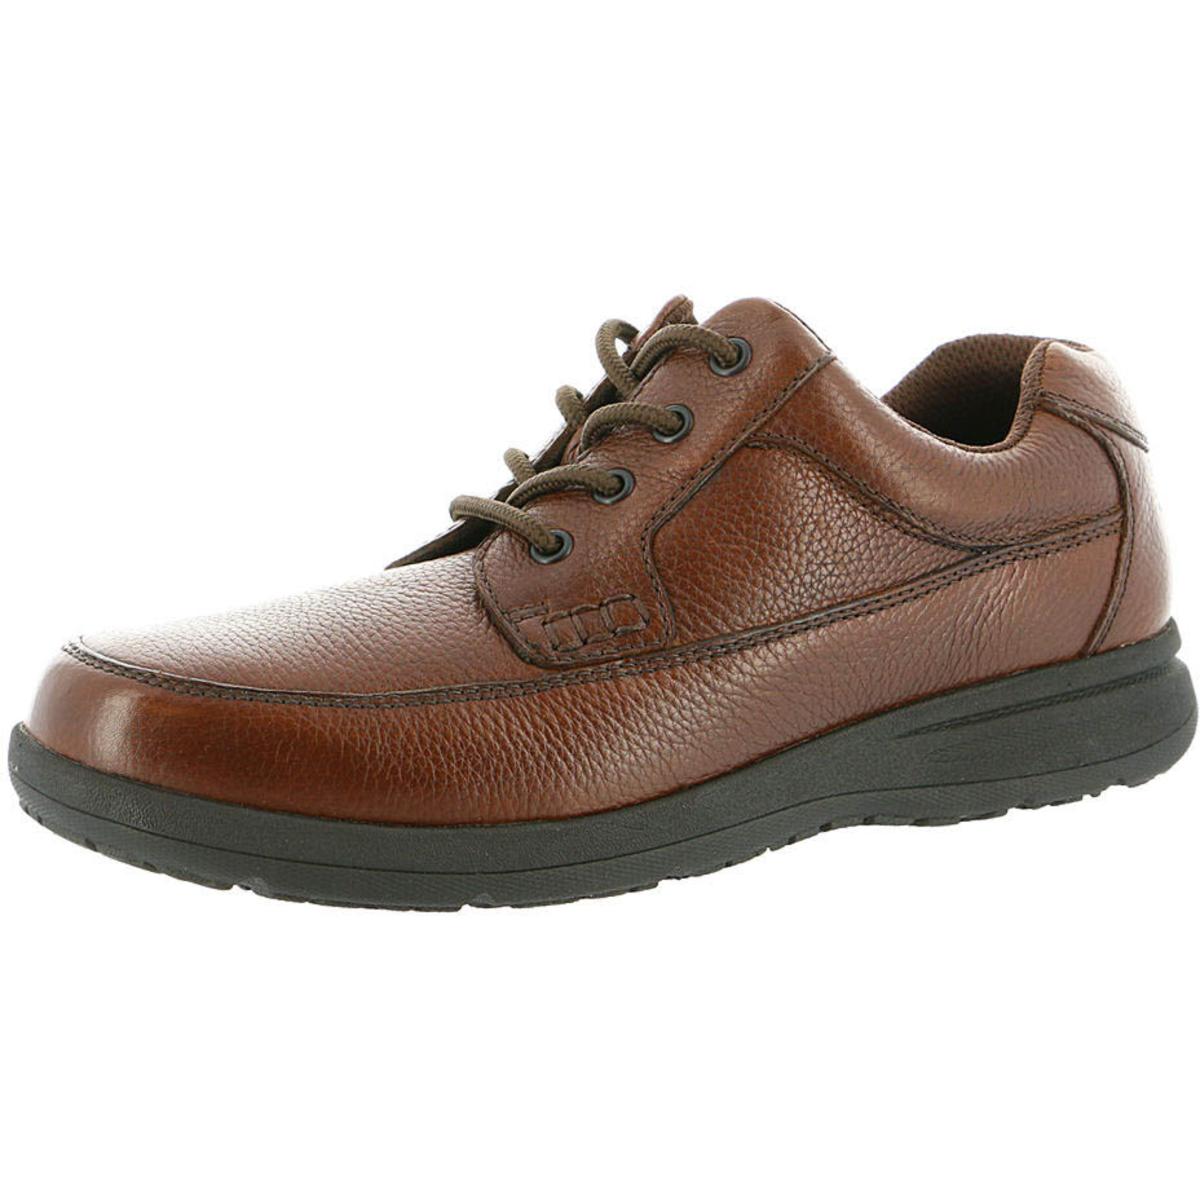 Nunn Bush Mens Cam Brown Leather Lace-Up Oxfords Shoes 8 Medium (D ...